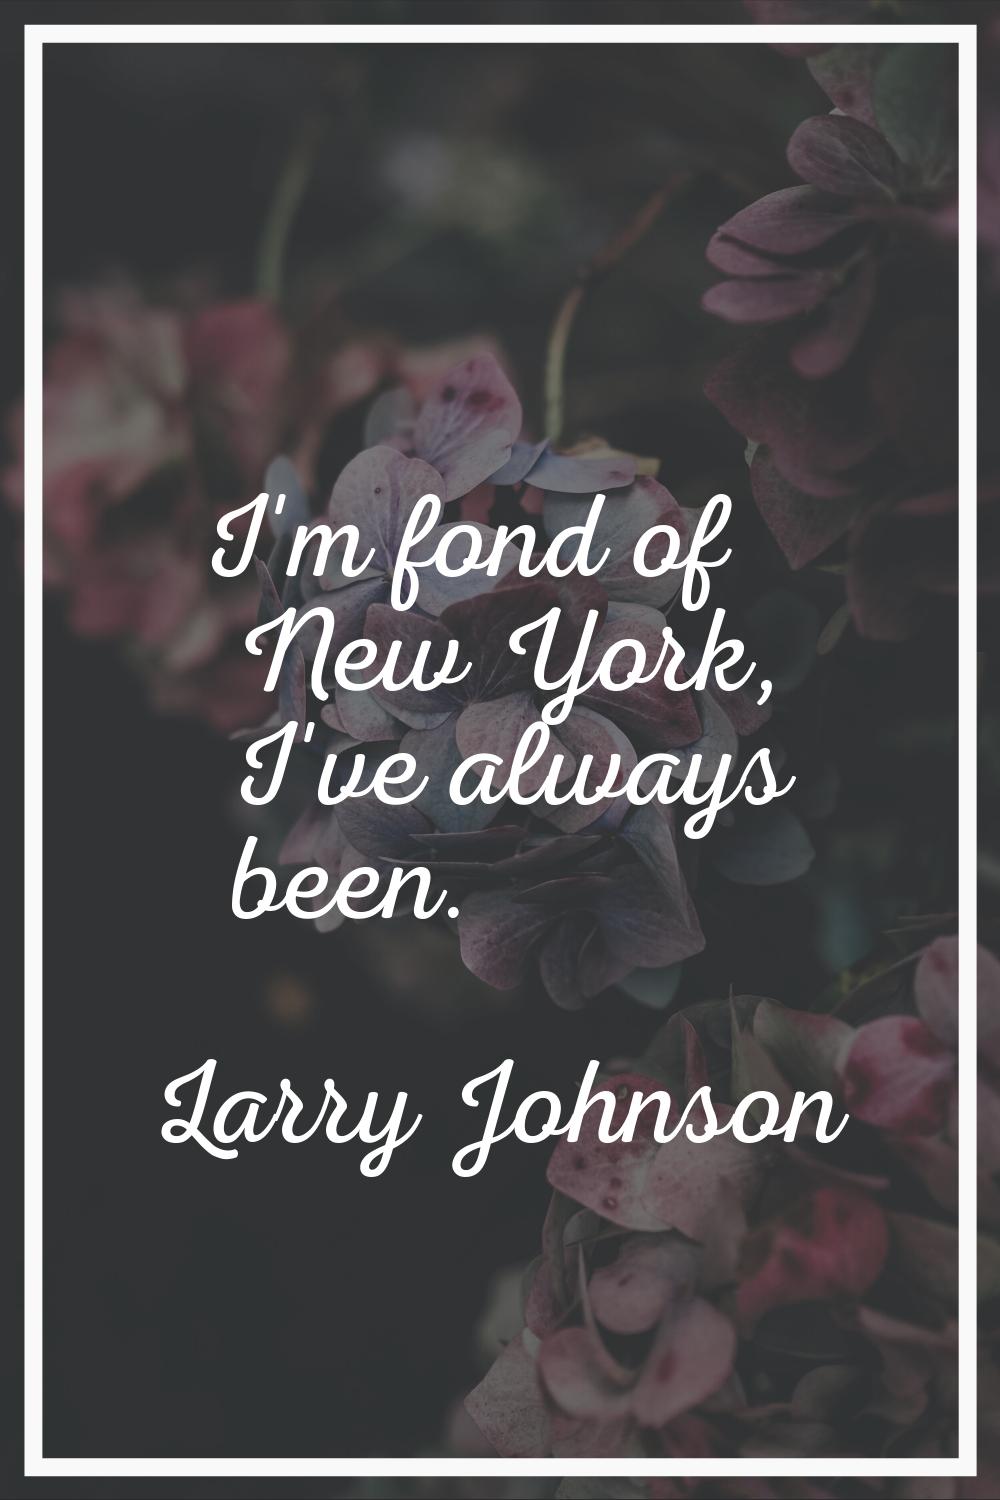 I'm fond of New York, I've always been.